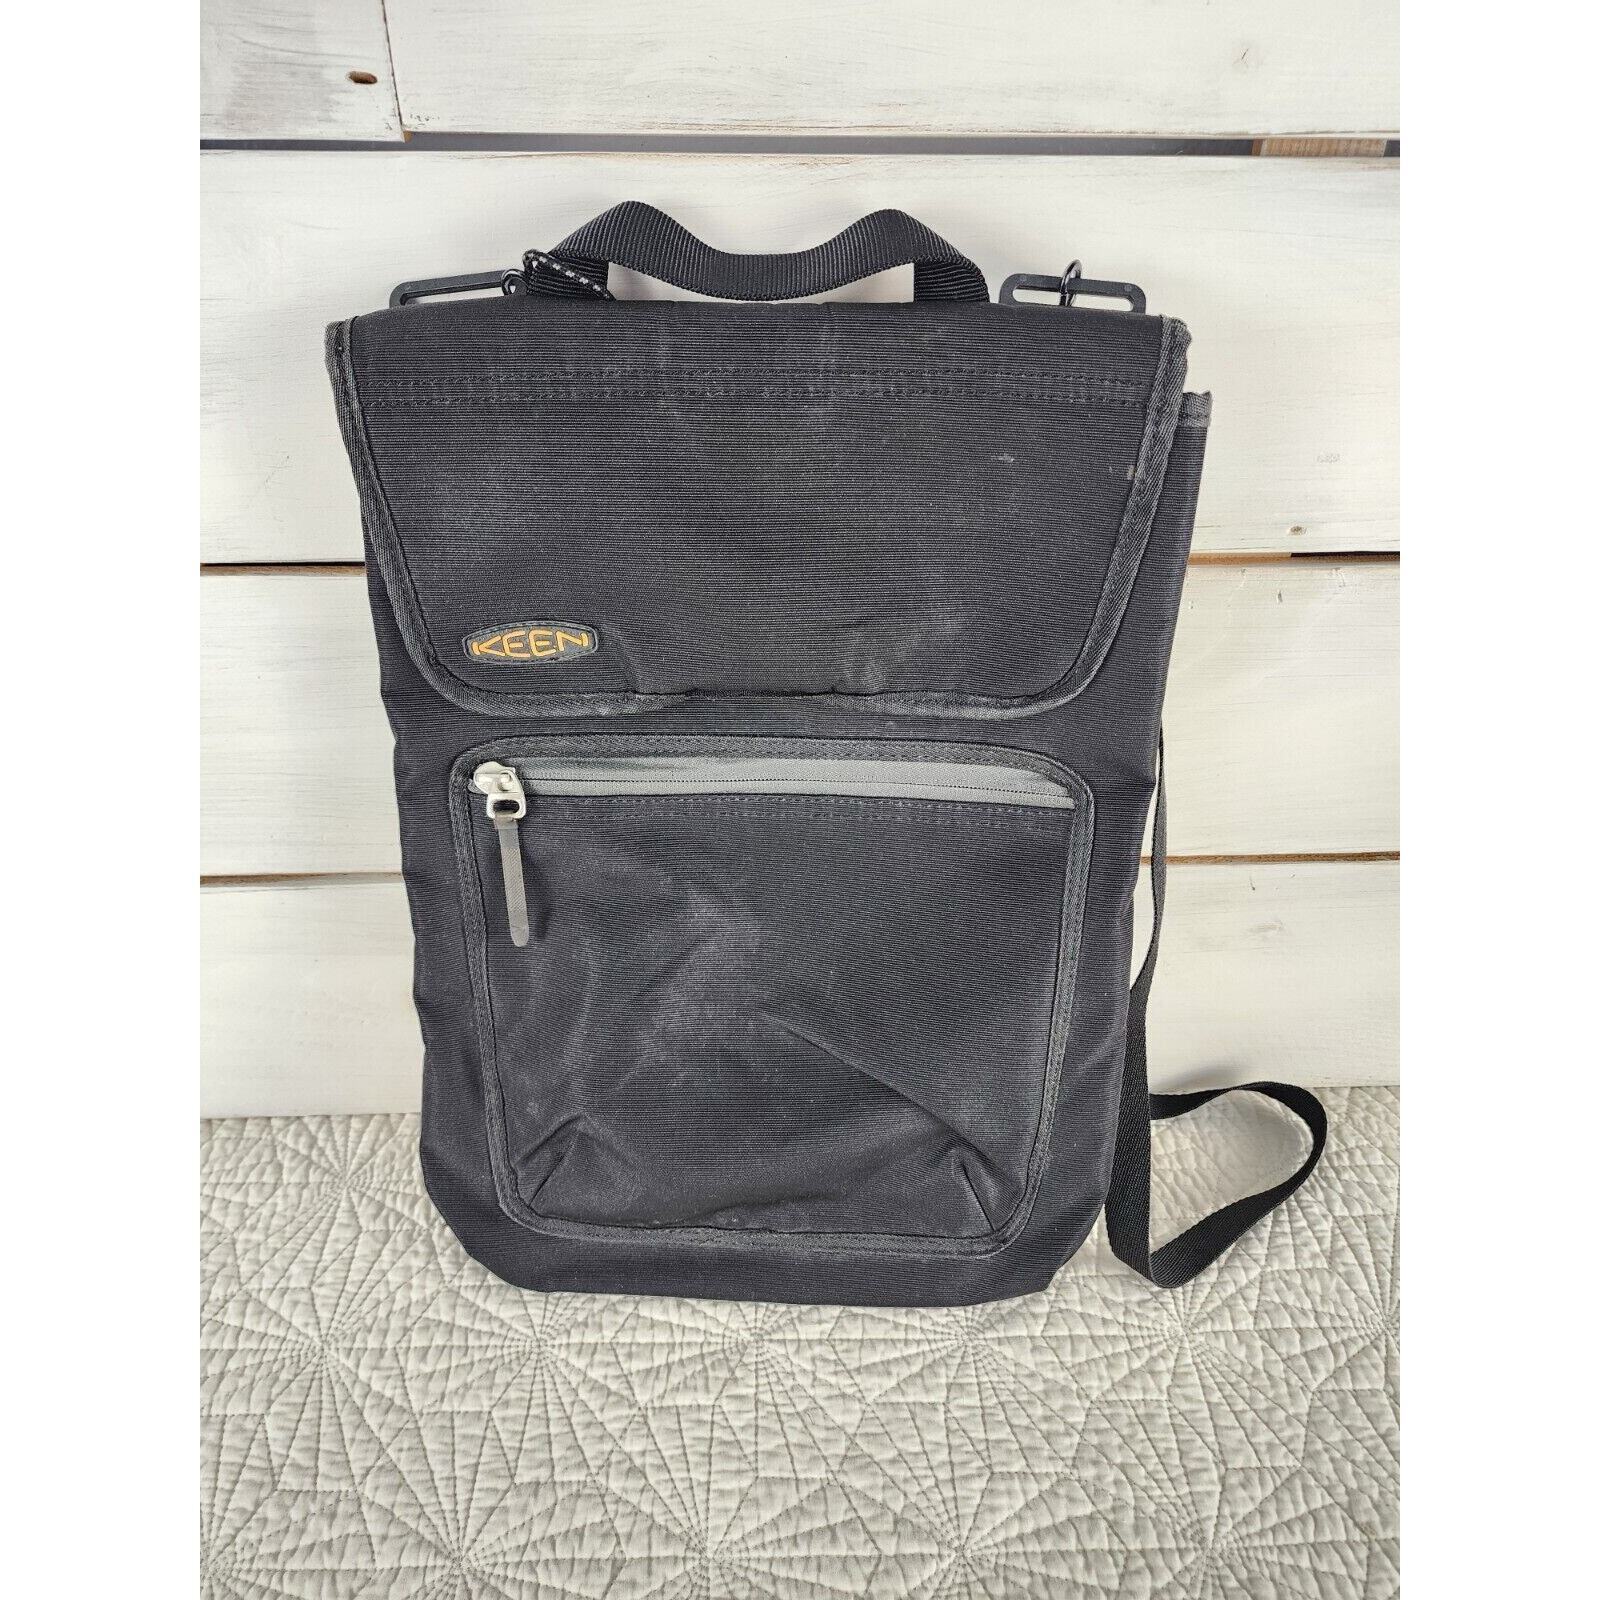 Keen Messenger Laptop Bag Shoulder Strap Fuzzy Lined Pocket